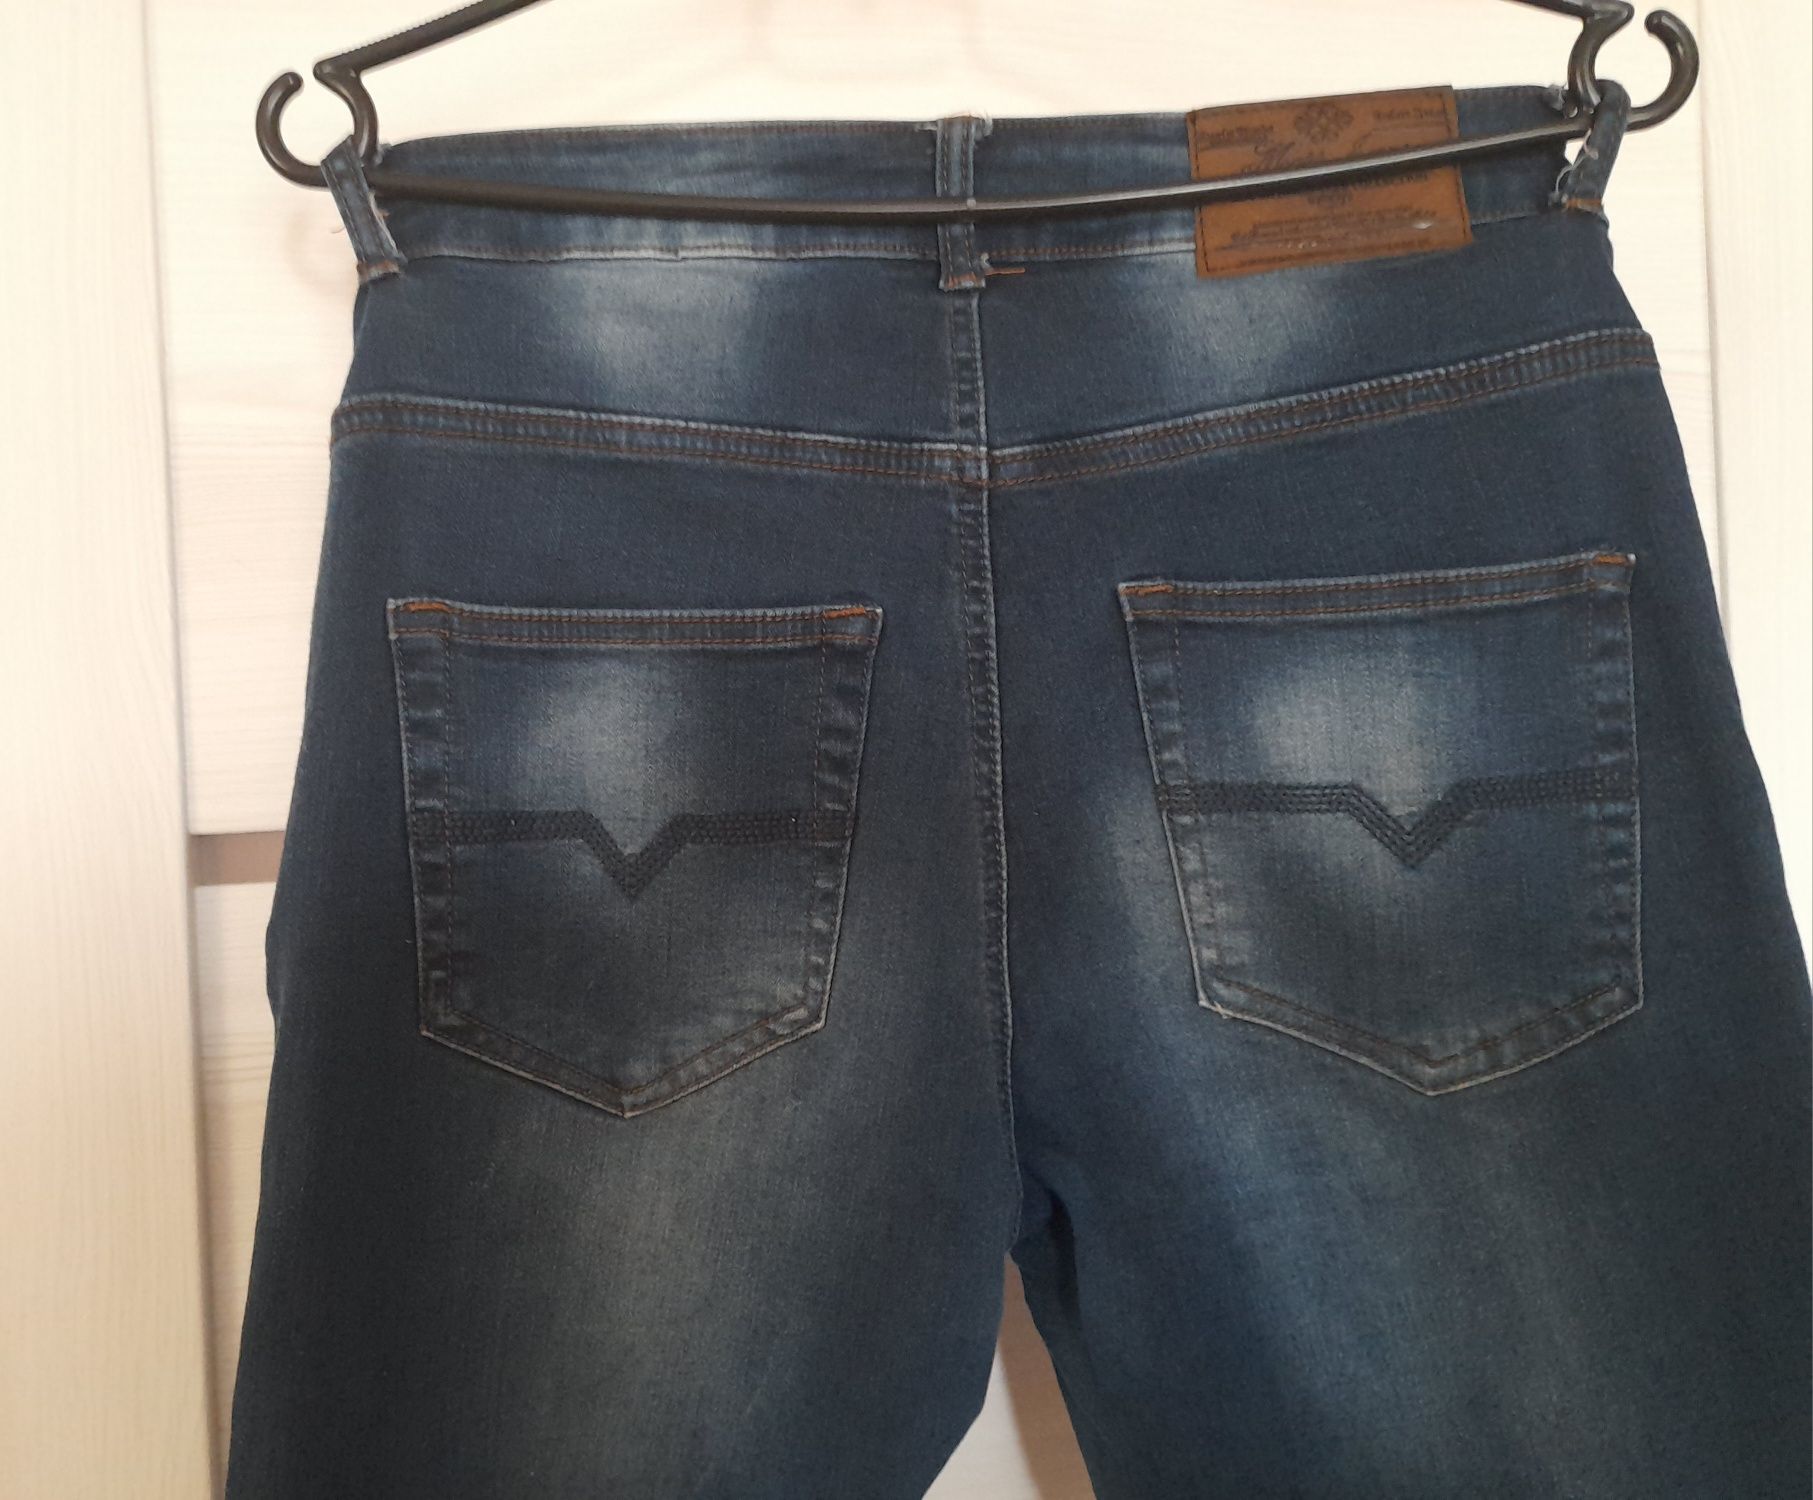 36 S spodnie jeansowe jeansy damskie